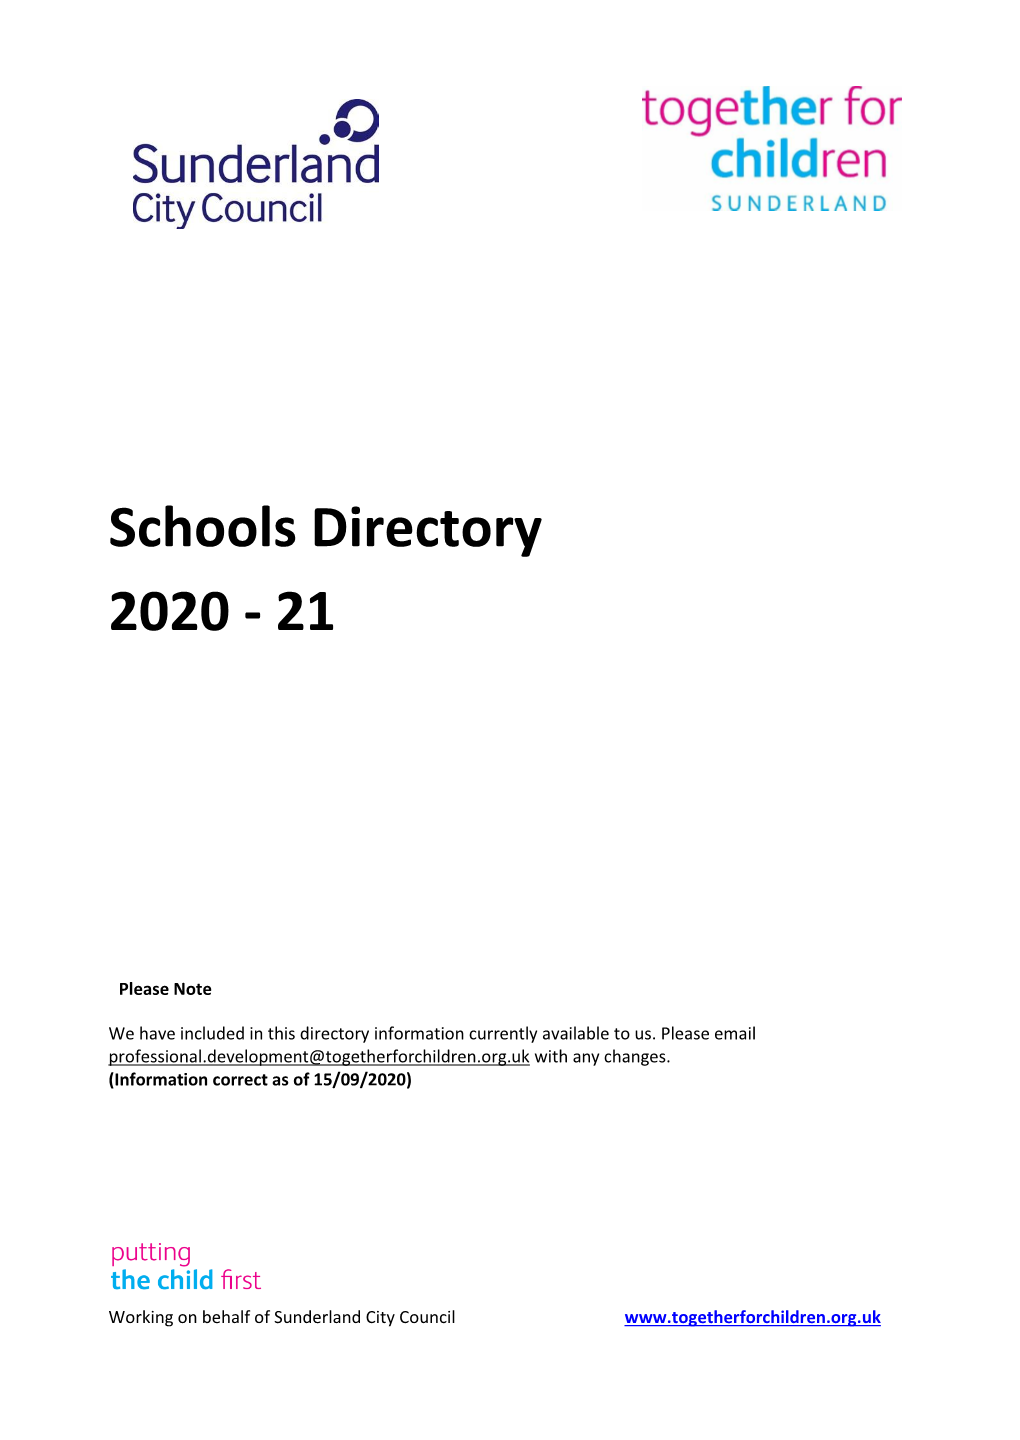 Schools Directory 2020 - 21